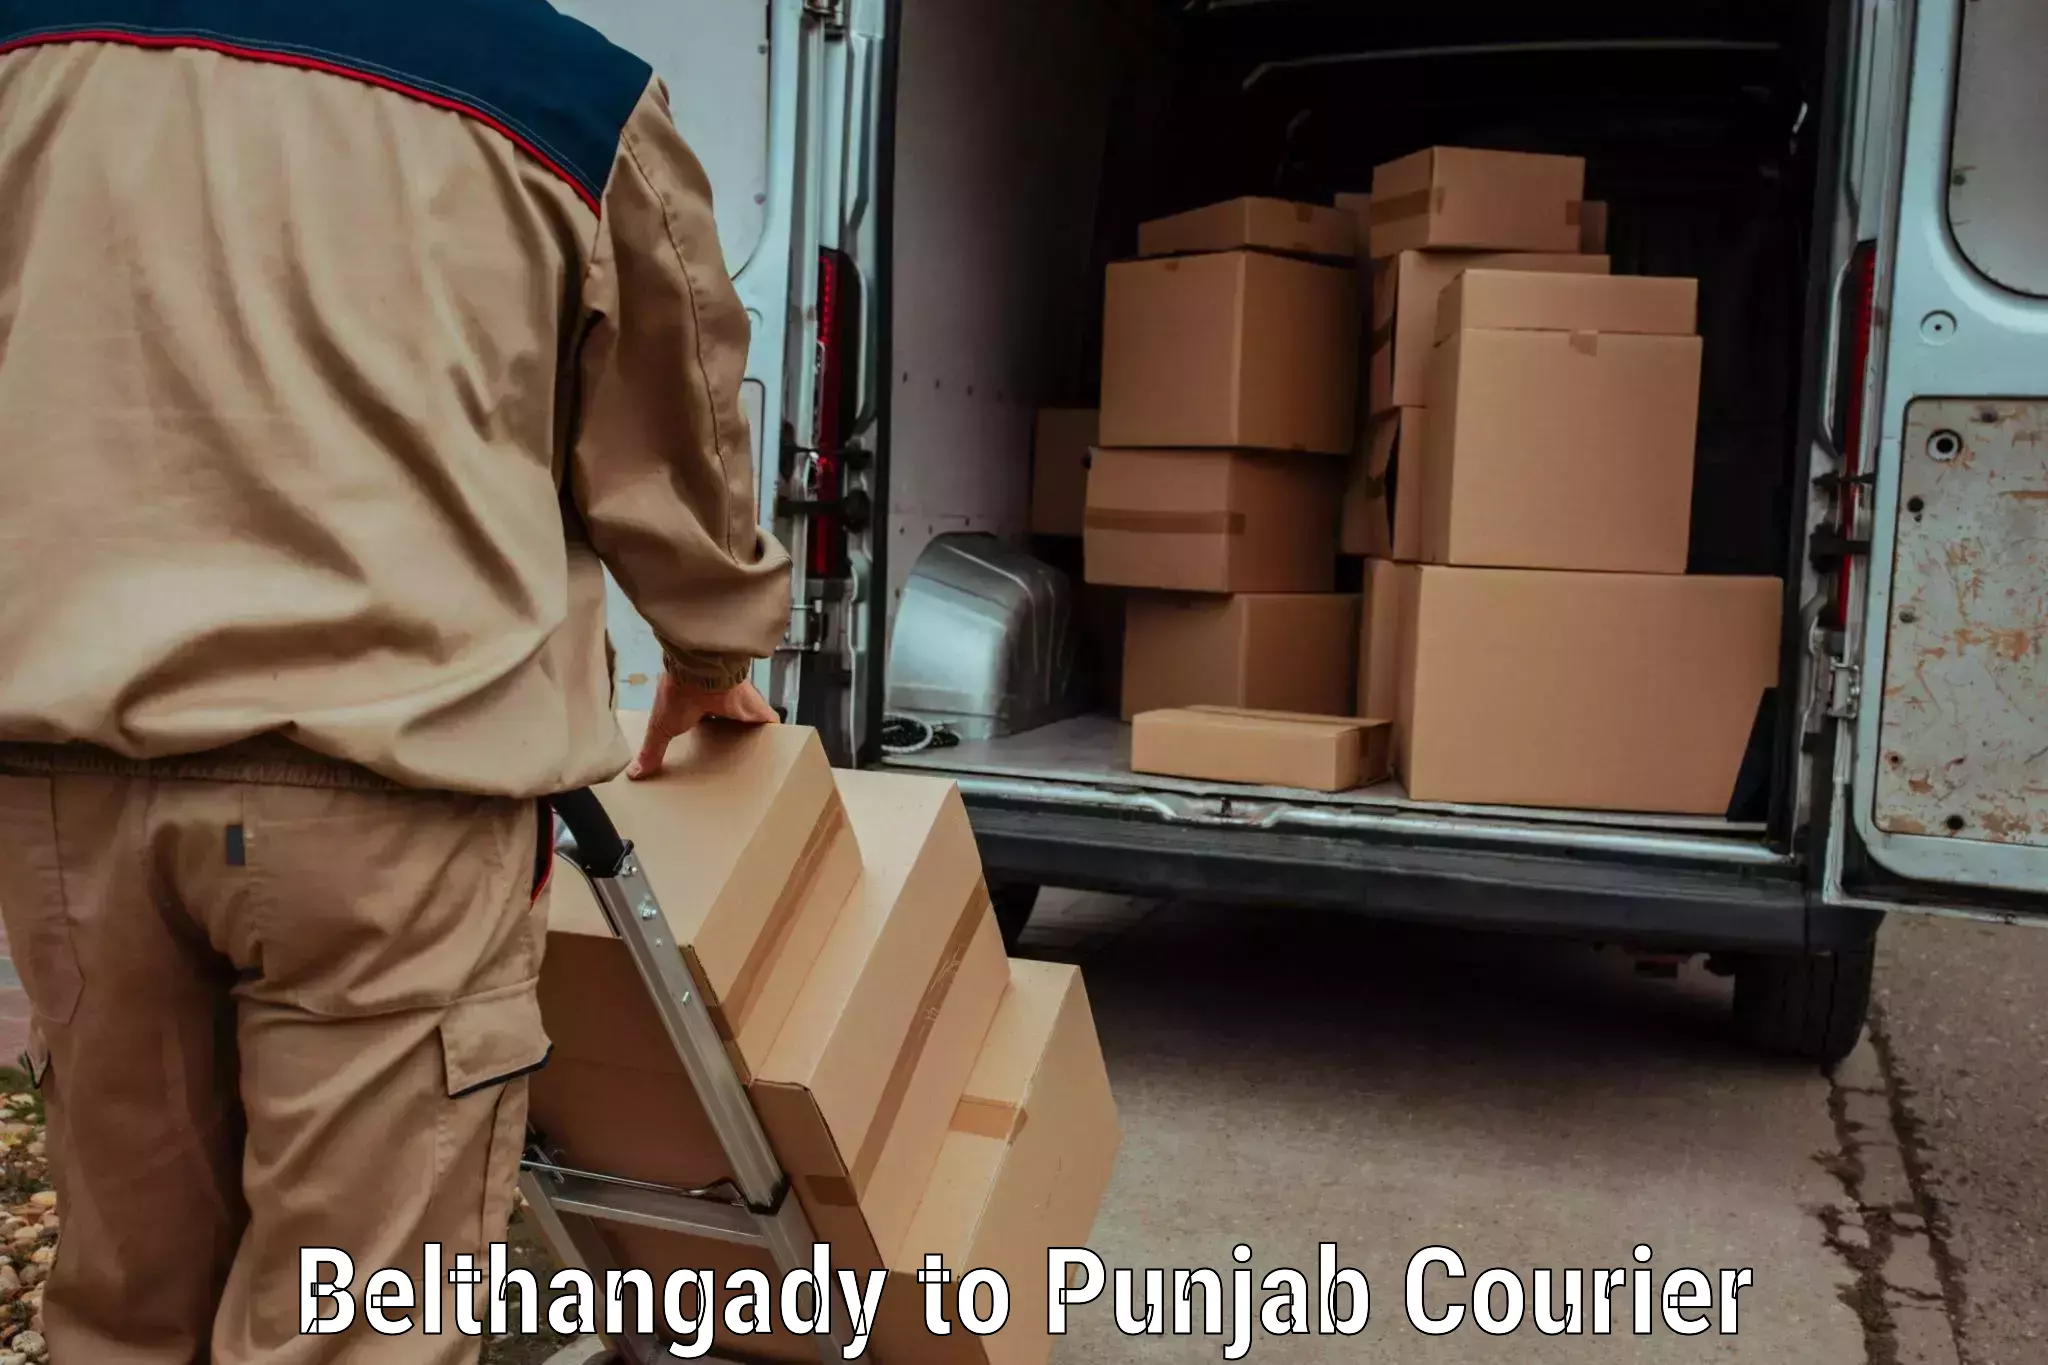 Digital shipping tools Belthangady to Central University of Punjab Bathinda